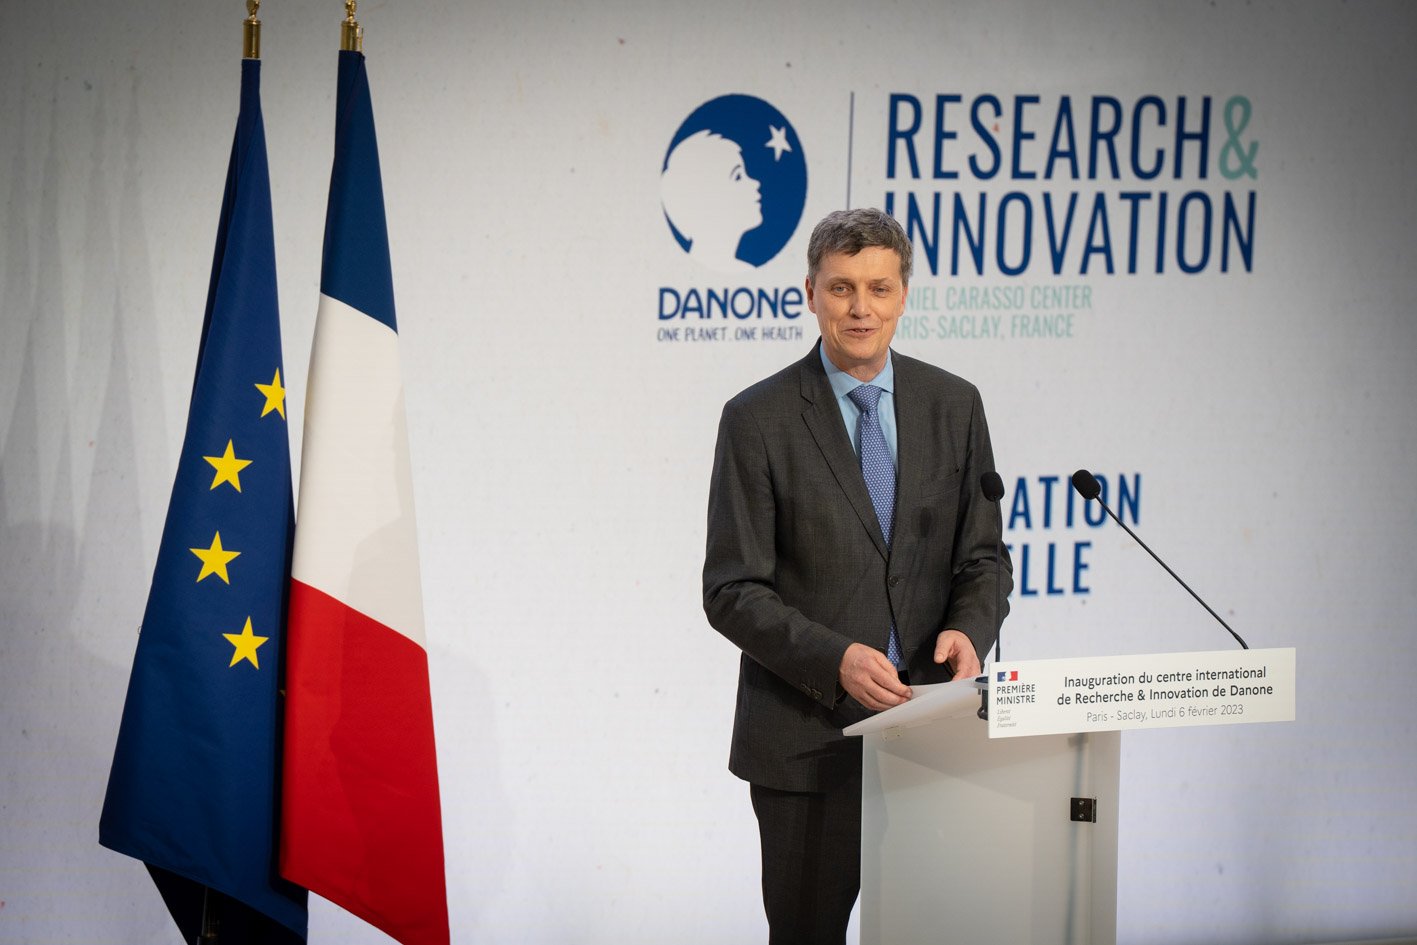 Antoine de Saint-Affrique Danone CEO